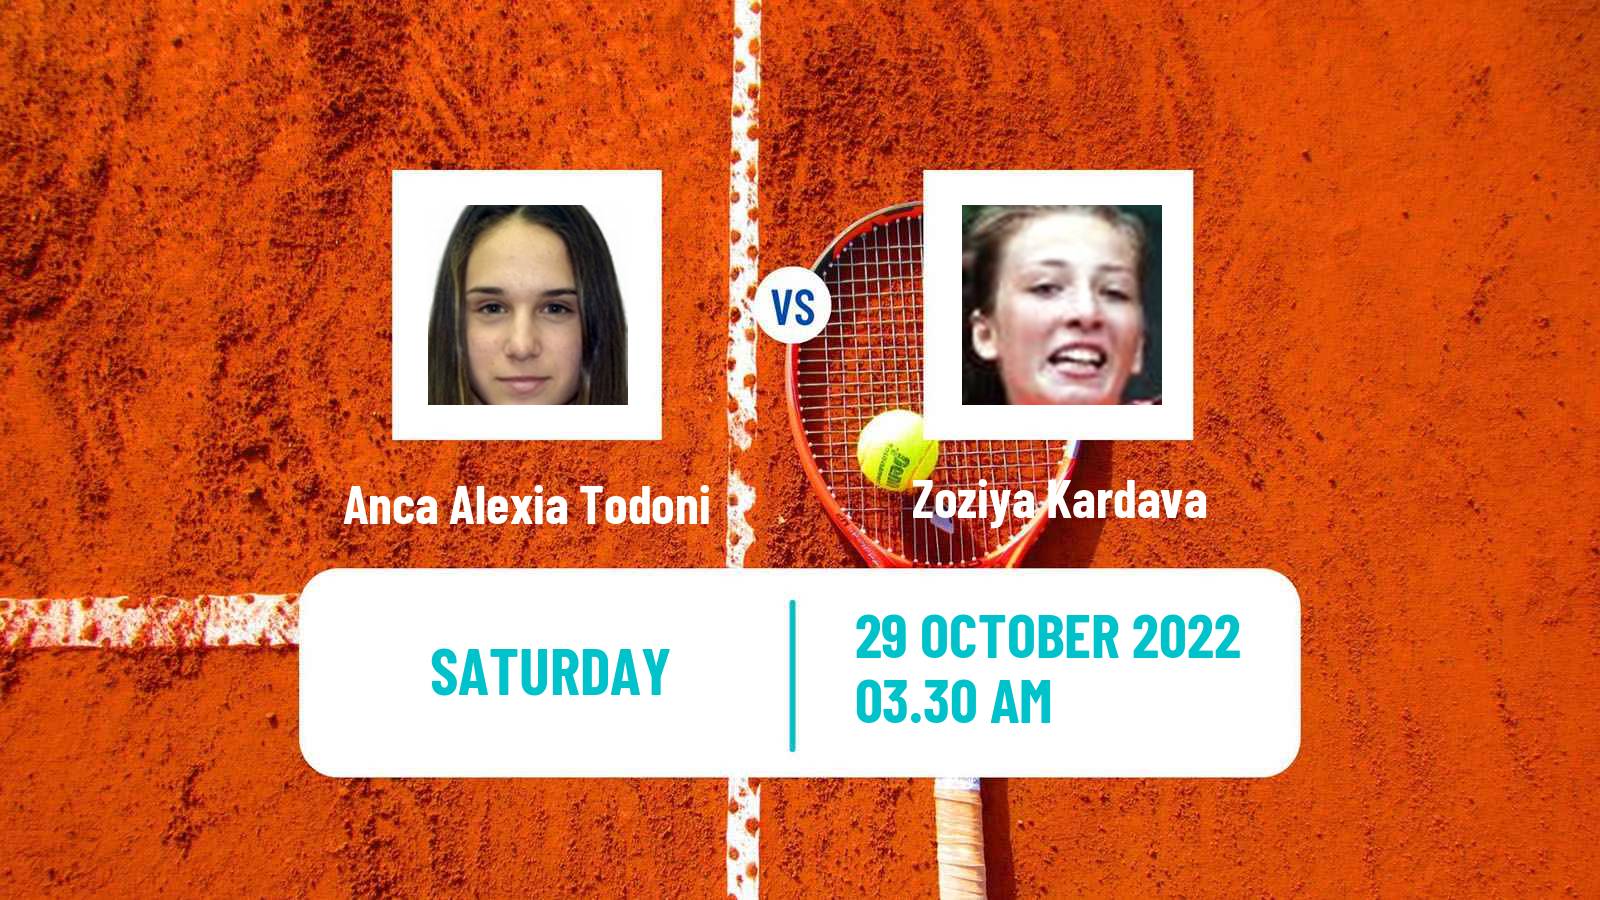 Tennis ITF Tournaments Anca Alexia Todoni - Zoziya Kardava